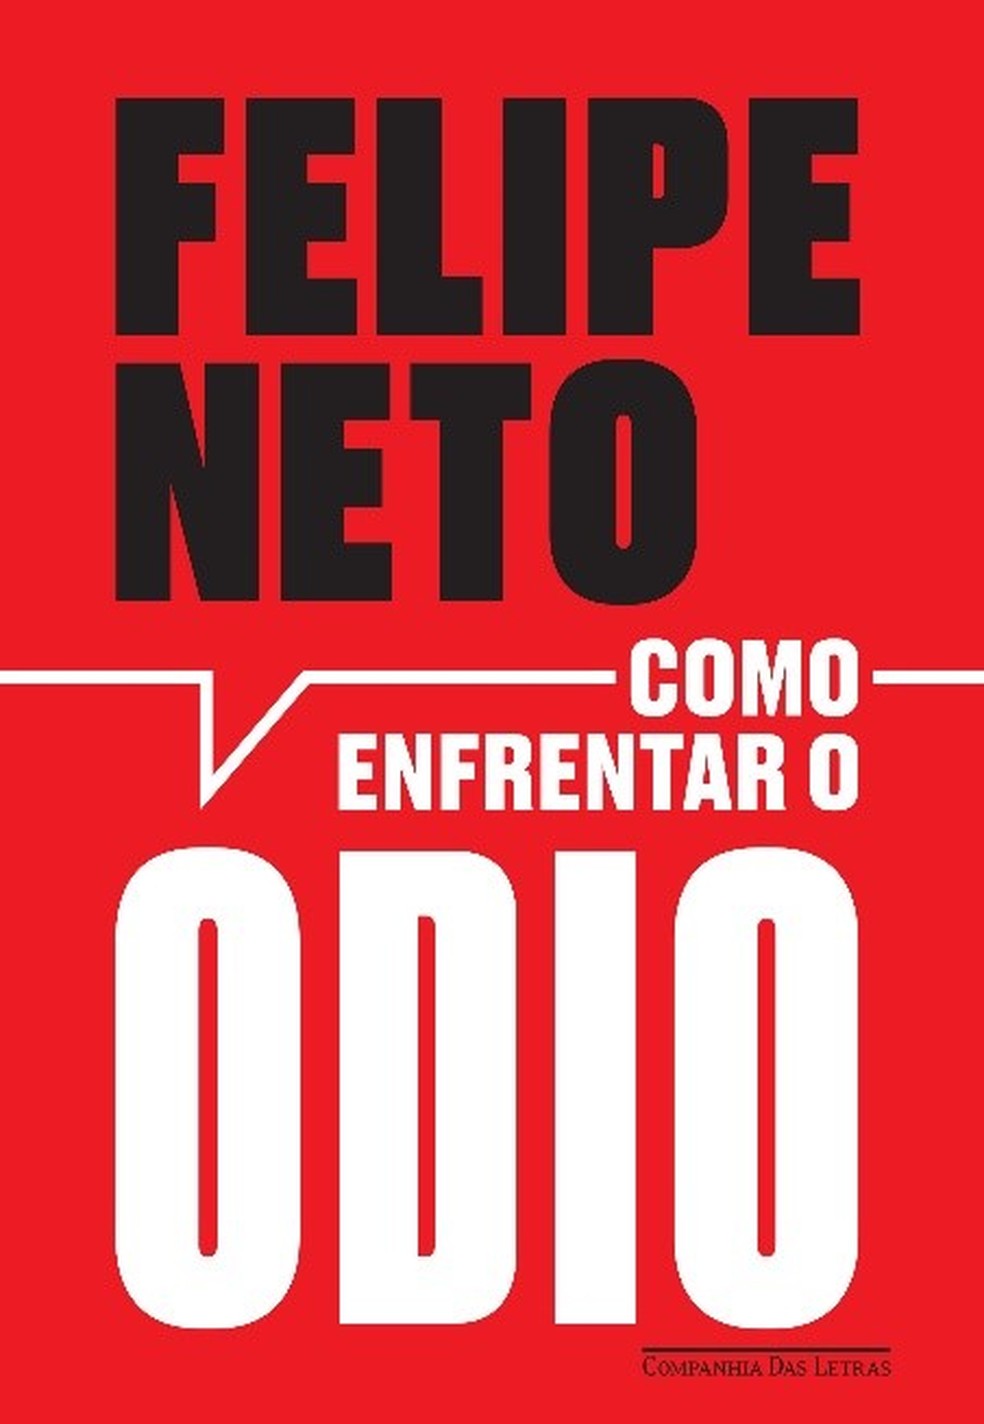 Capa de "Como enfrentar o ódio", livro de Felipe Neto — Foto: Divulgaçã